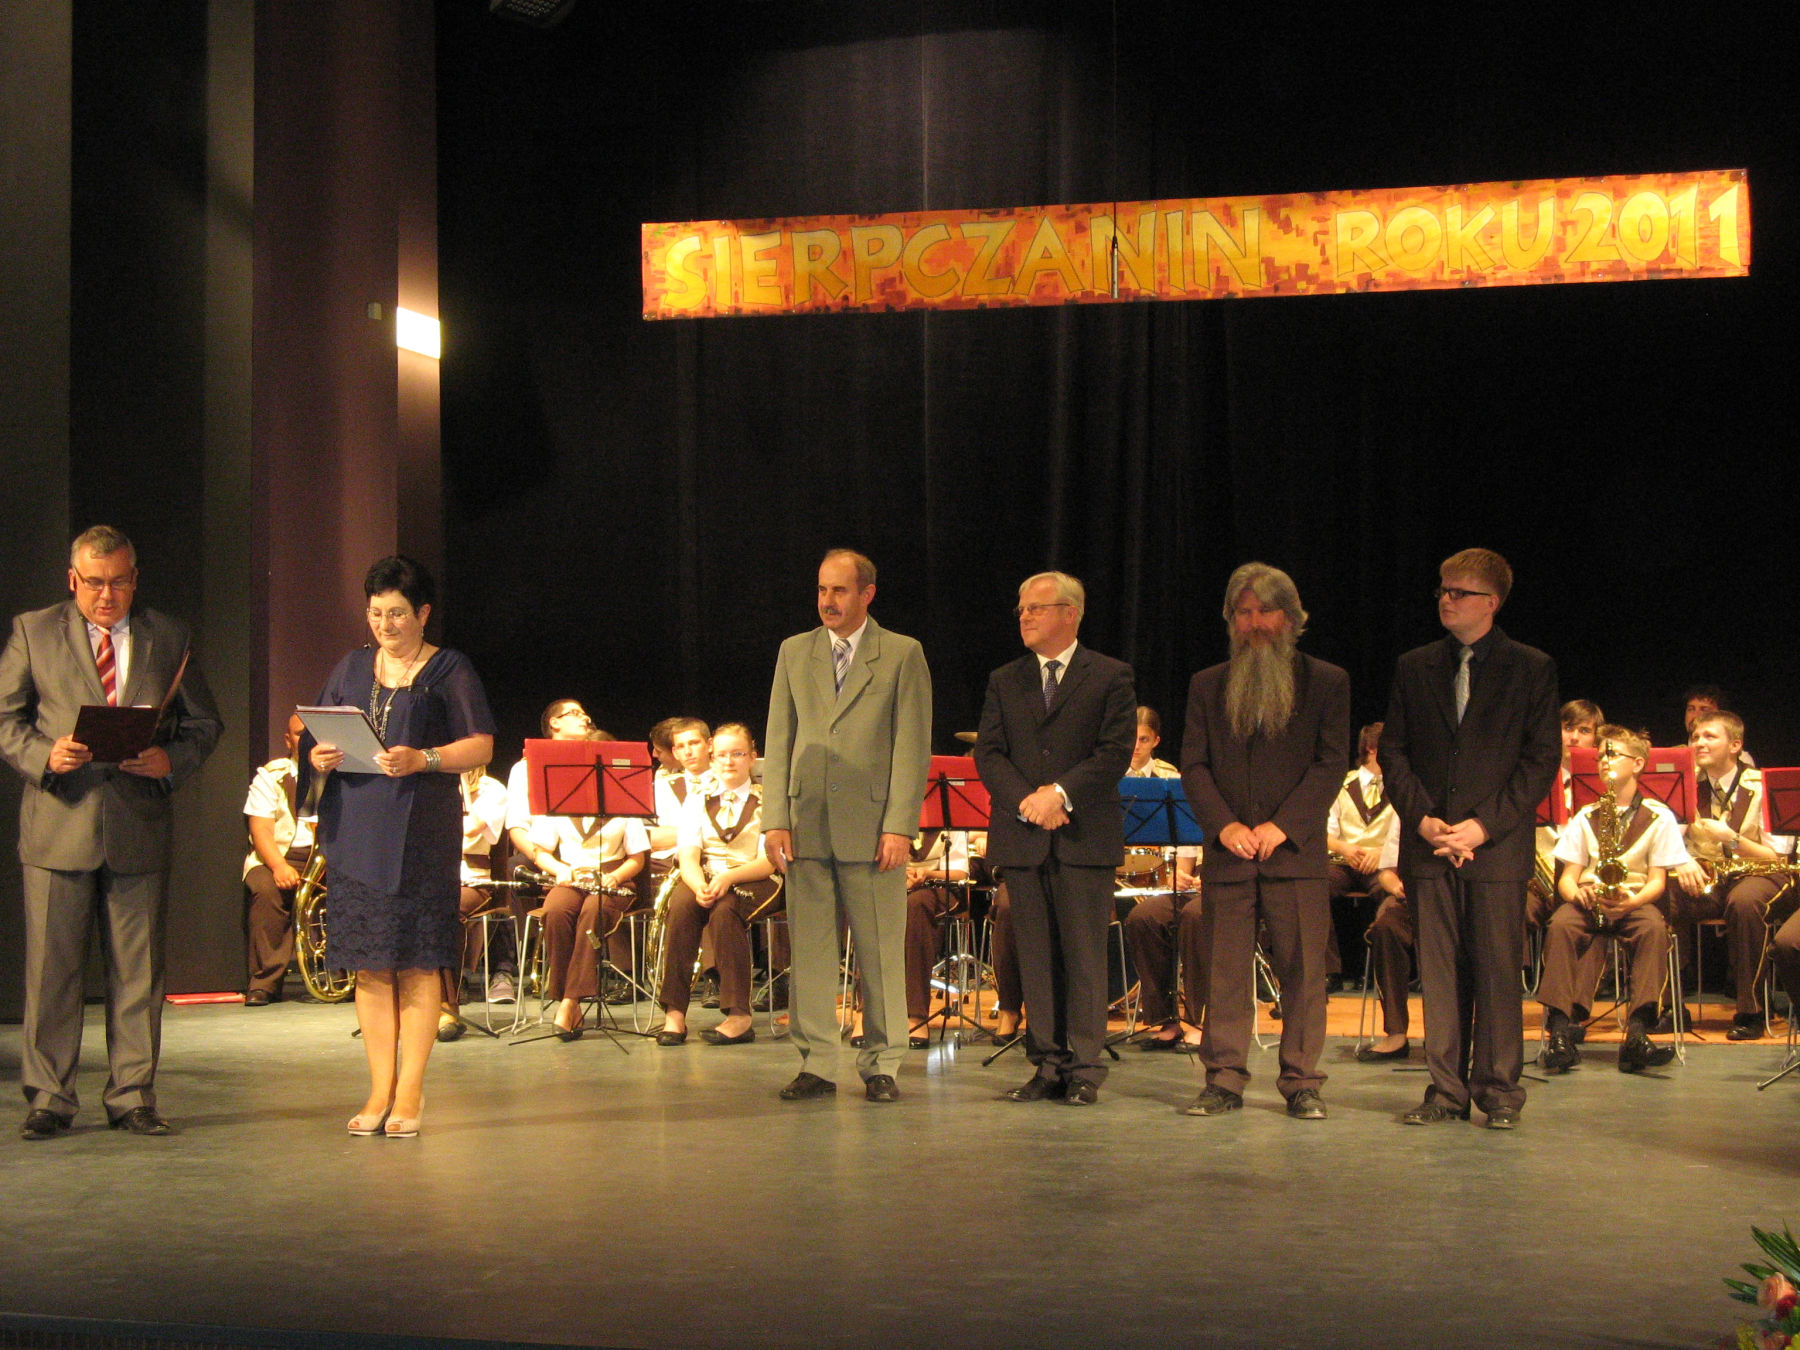 Nominowani do Tytuu: od lewej: Micha Gowacki, Krzysztof Falkiewicz, Pawe B. Gsiorowski, Tomasz Kowalski, 19.06.2012 r.